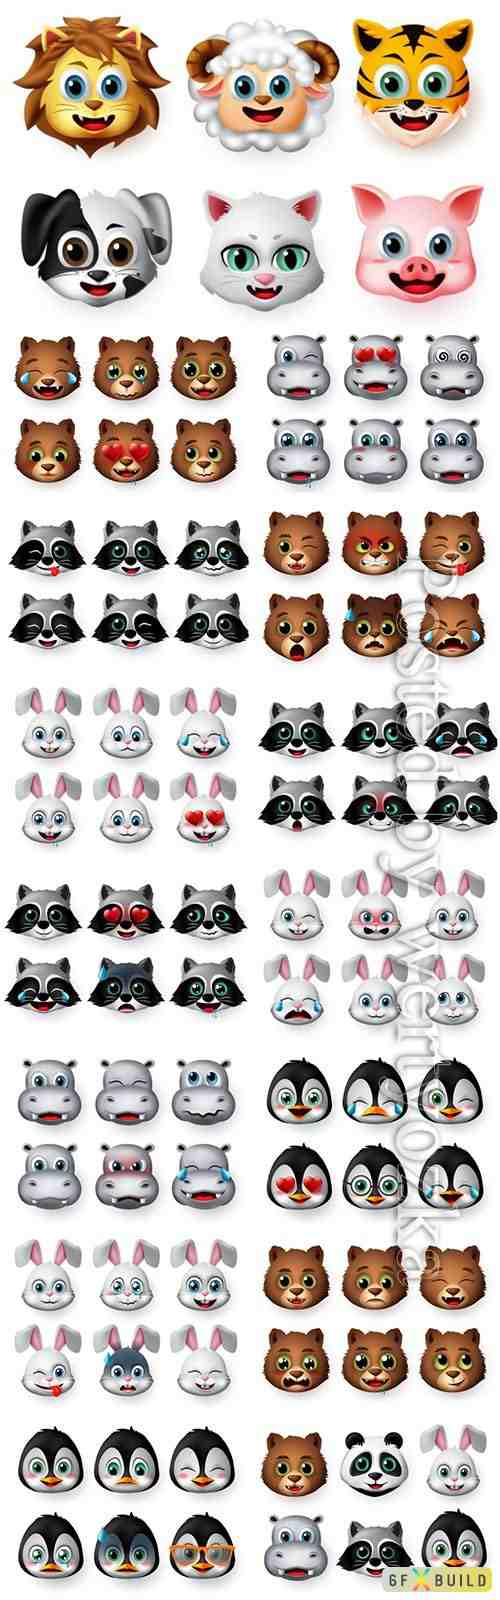 Animals emoji and emoticon happy face vector set